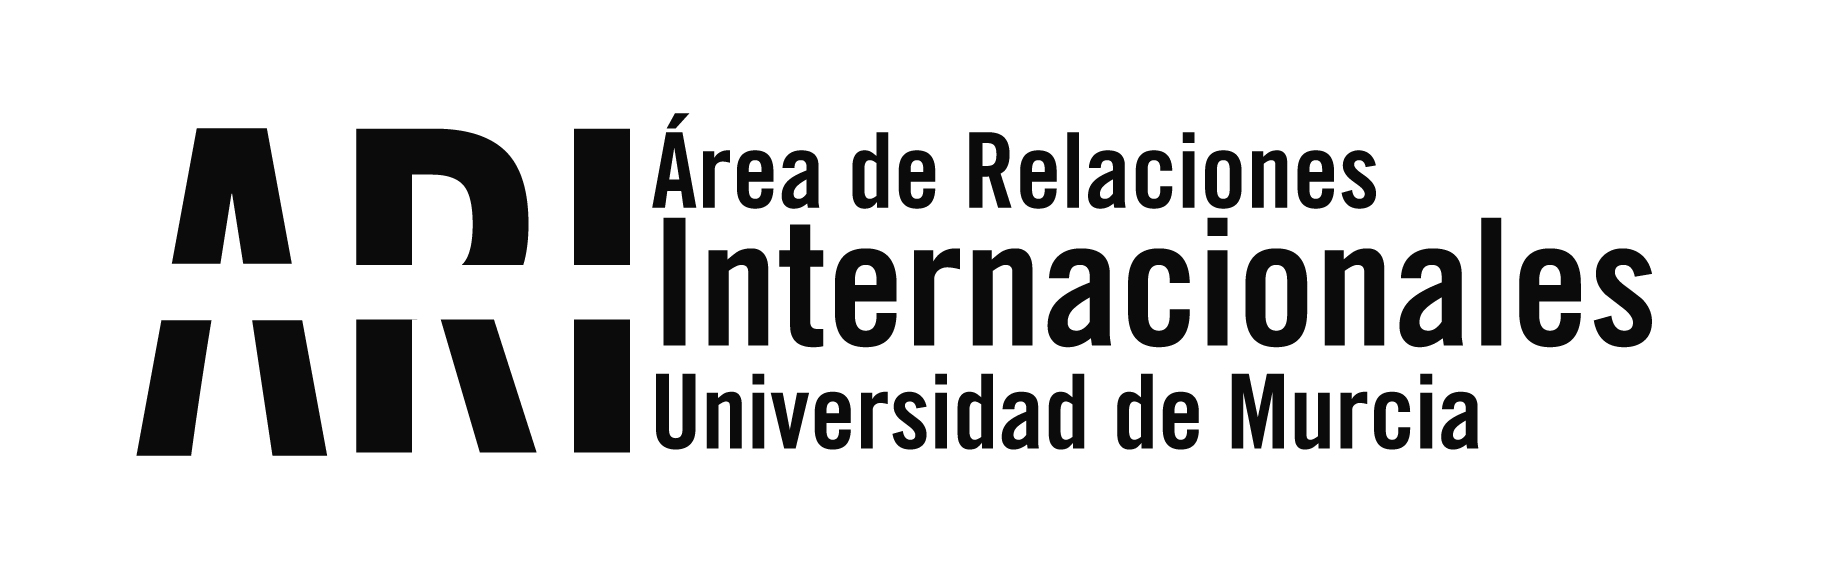 Promoción de la Universidad de Murcia en la Universidad El Bosque de Colombia - Área de Relaciones Internacionales